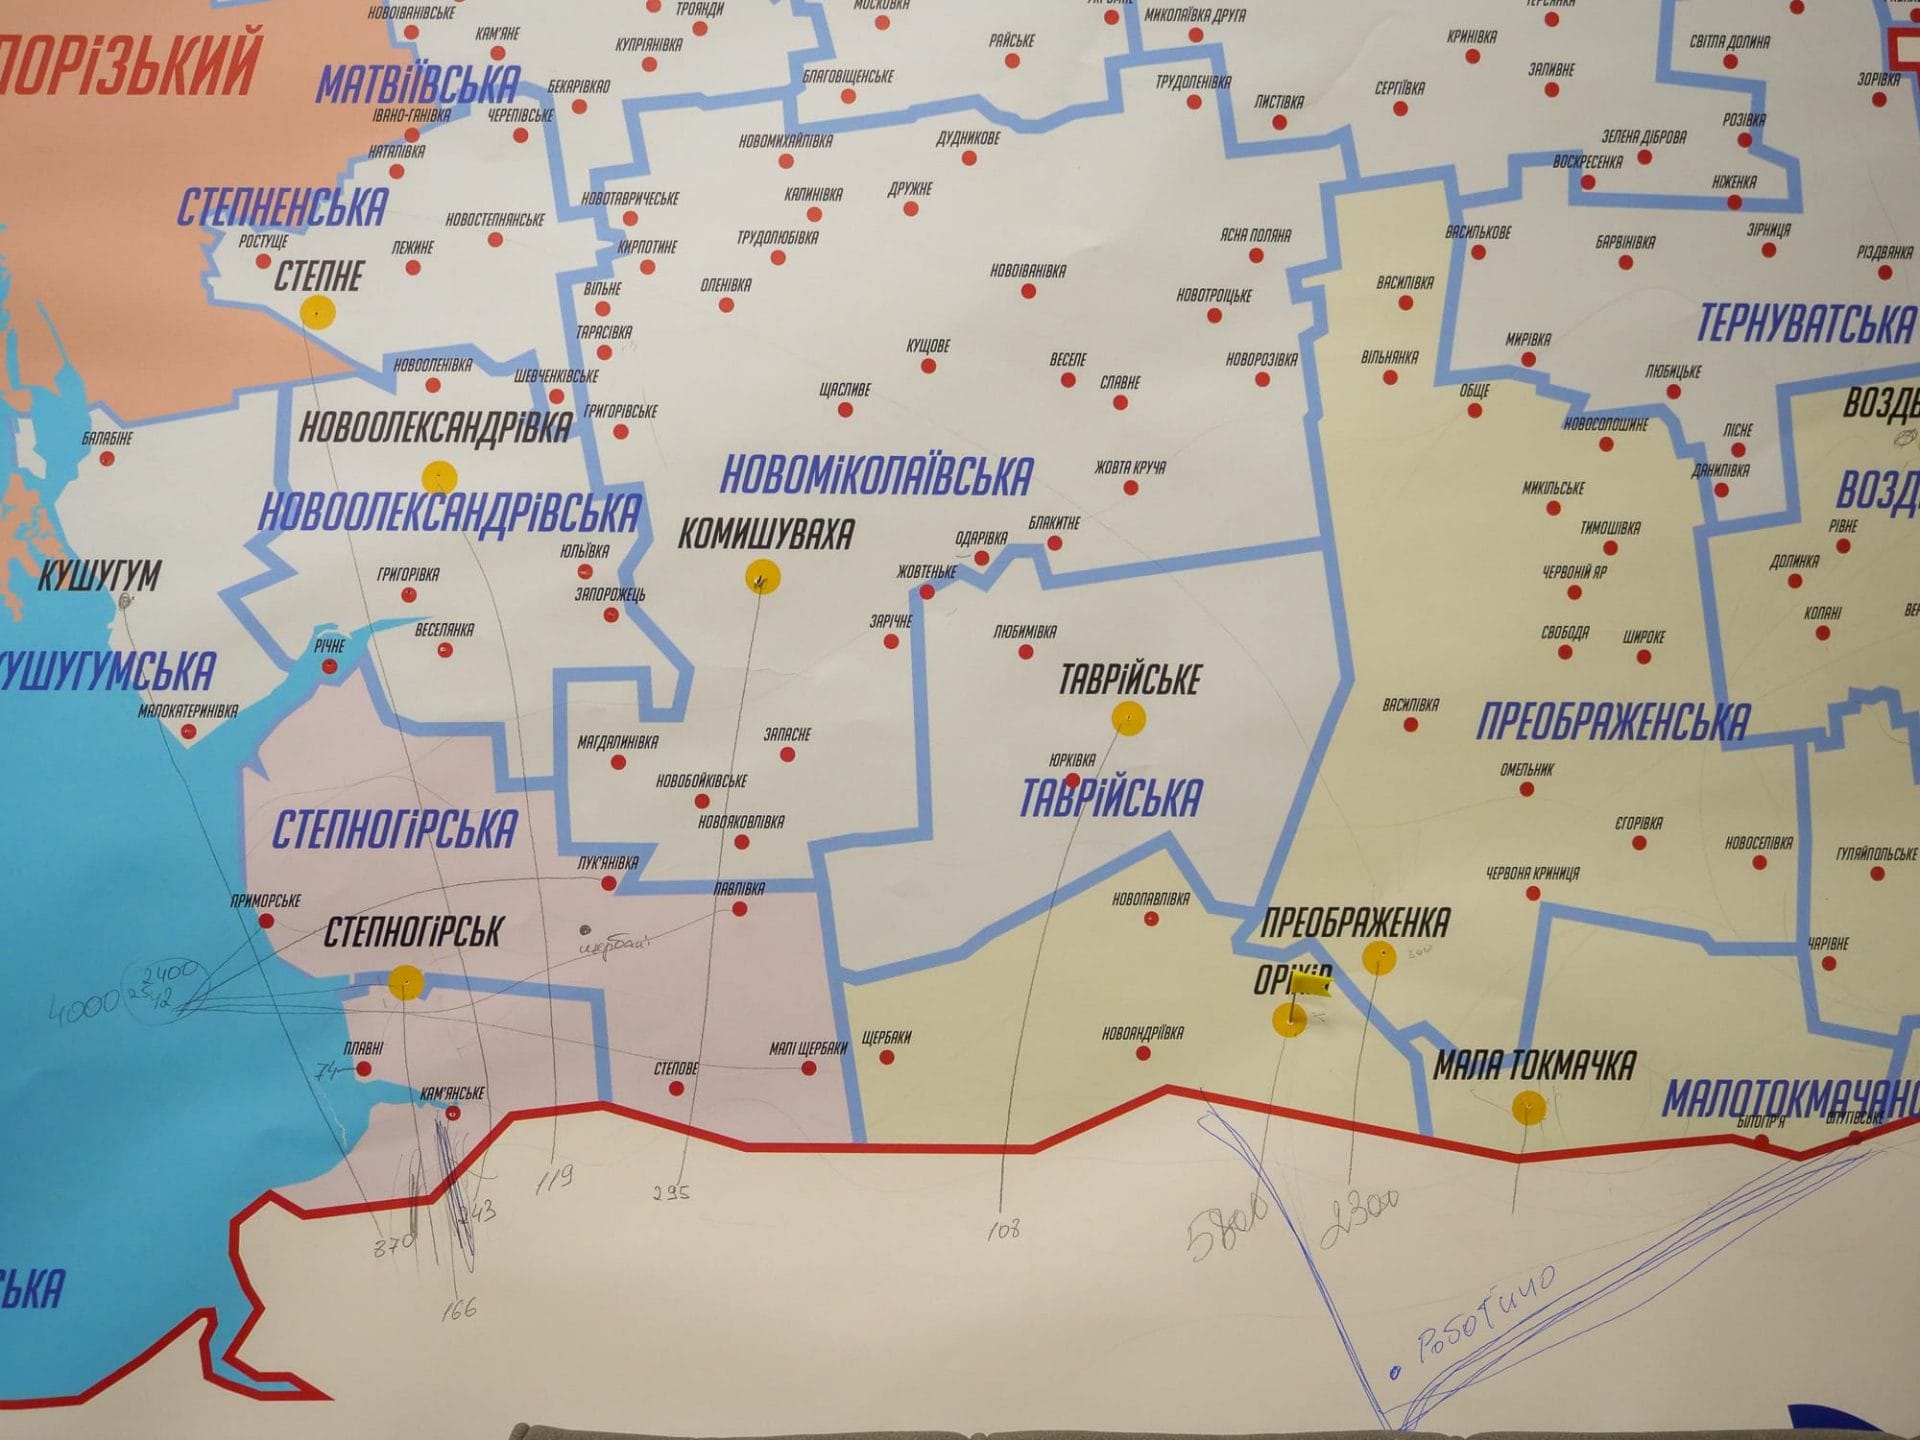 Eine Karte der ukrainischen Provinzen in der Oblast Saporischschja. Mit einem Stift sind die Einwohner:innenzahlen der Dörfer neben die Ortsnamen geschrieben.